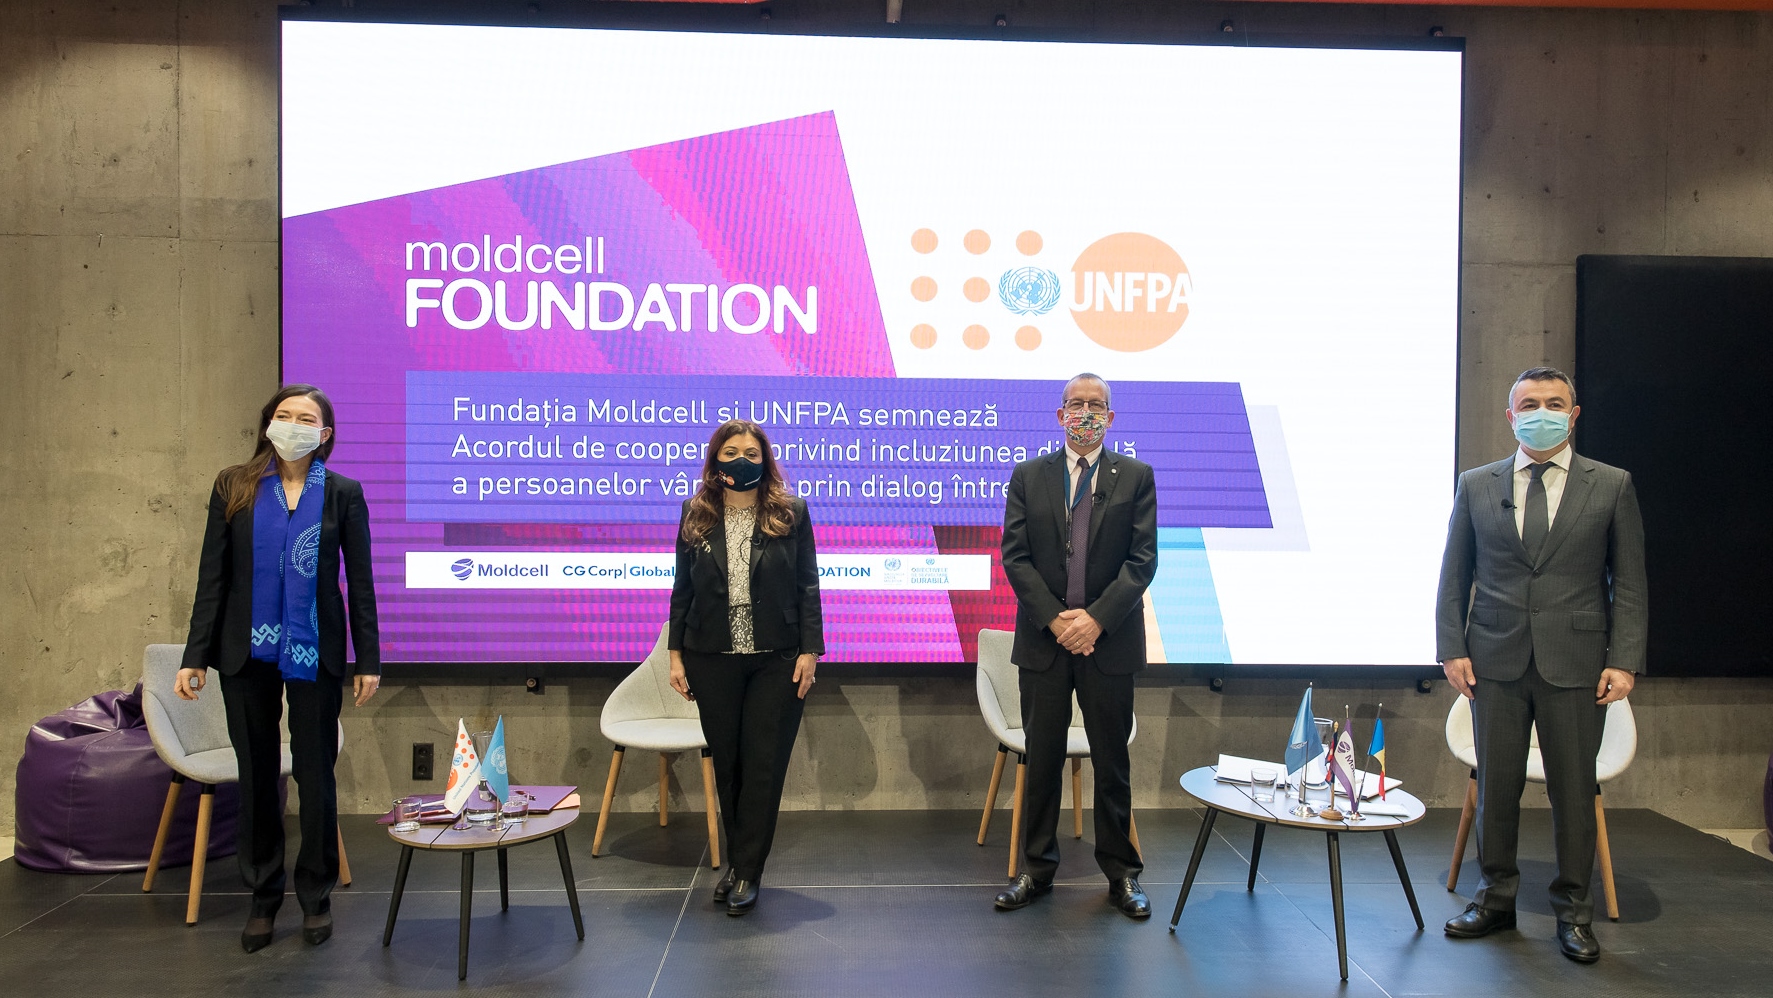 Moldcell расширяет проект «Лайк от бабушки» с помощью партнерства между Фондом ООН в области народонаселения и Фондом Moldcell